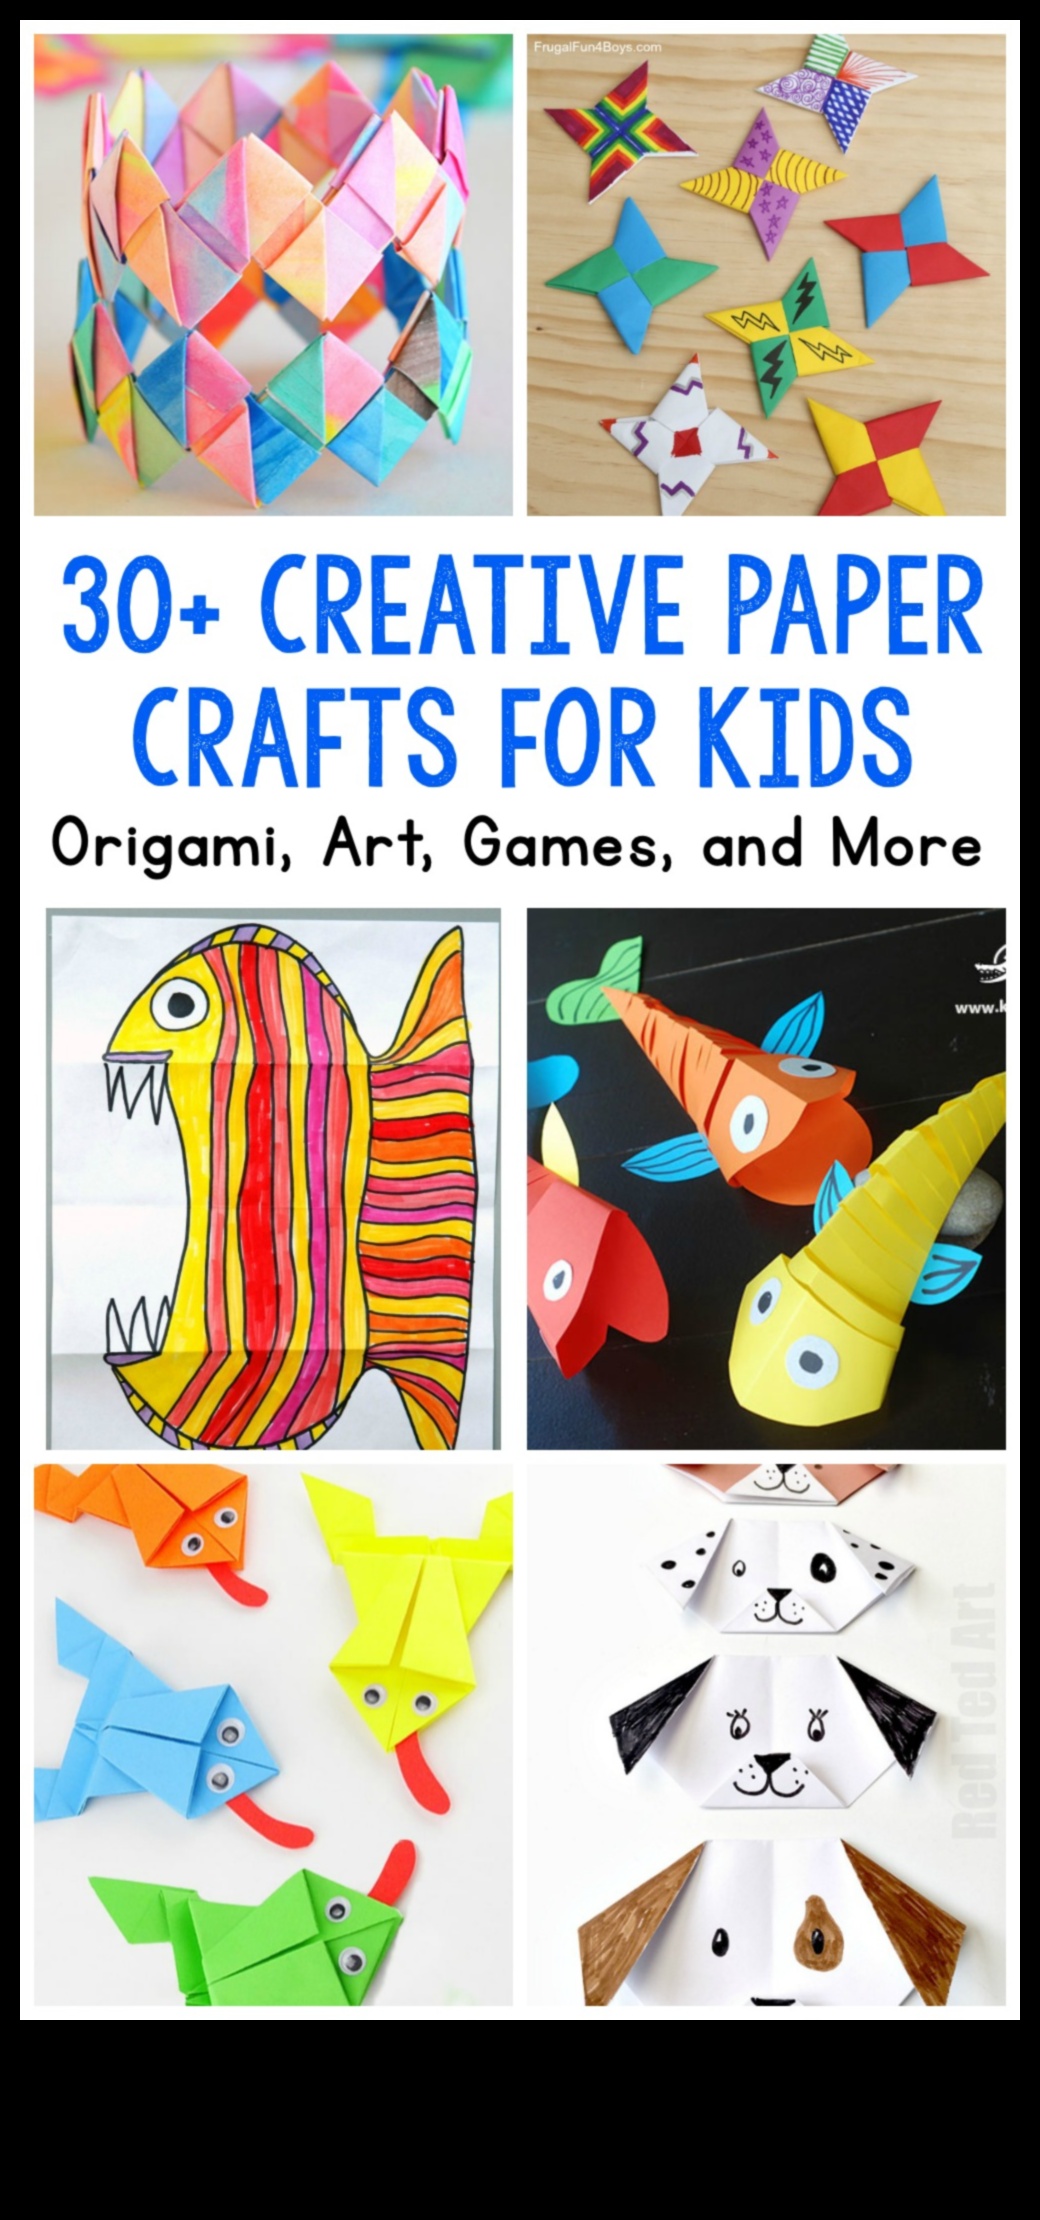 Desenli Origami Kağıdıyla İşçilik: Tasarımla Kıvrımları İyileştirme